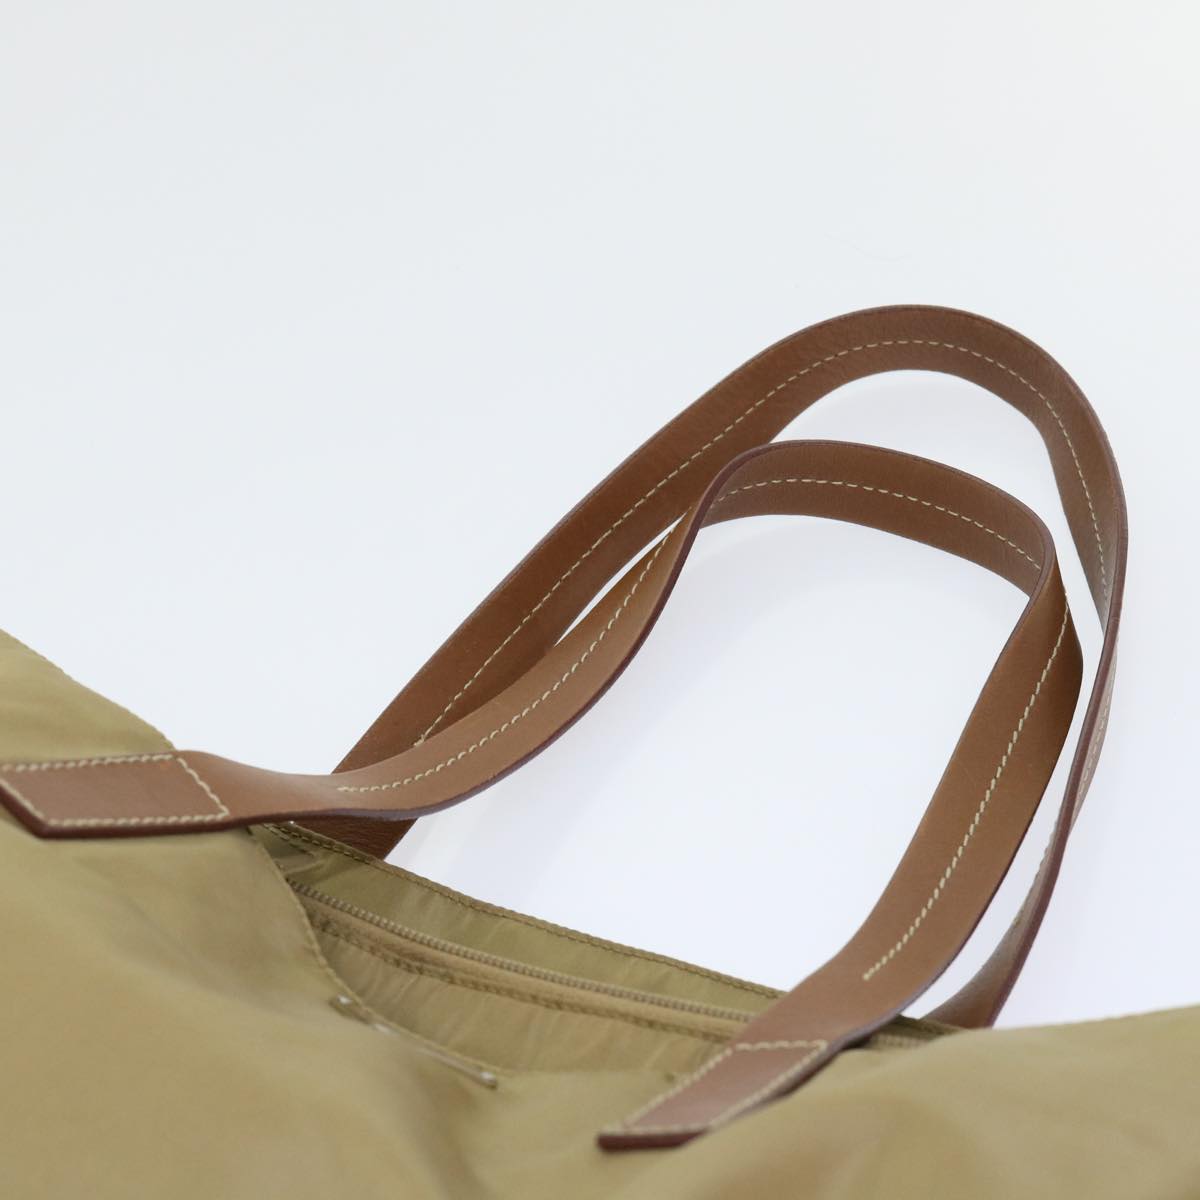 PRADA Tote Bag Nylon Leather Khaki Auth cl715